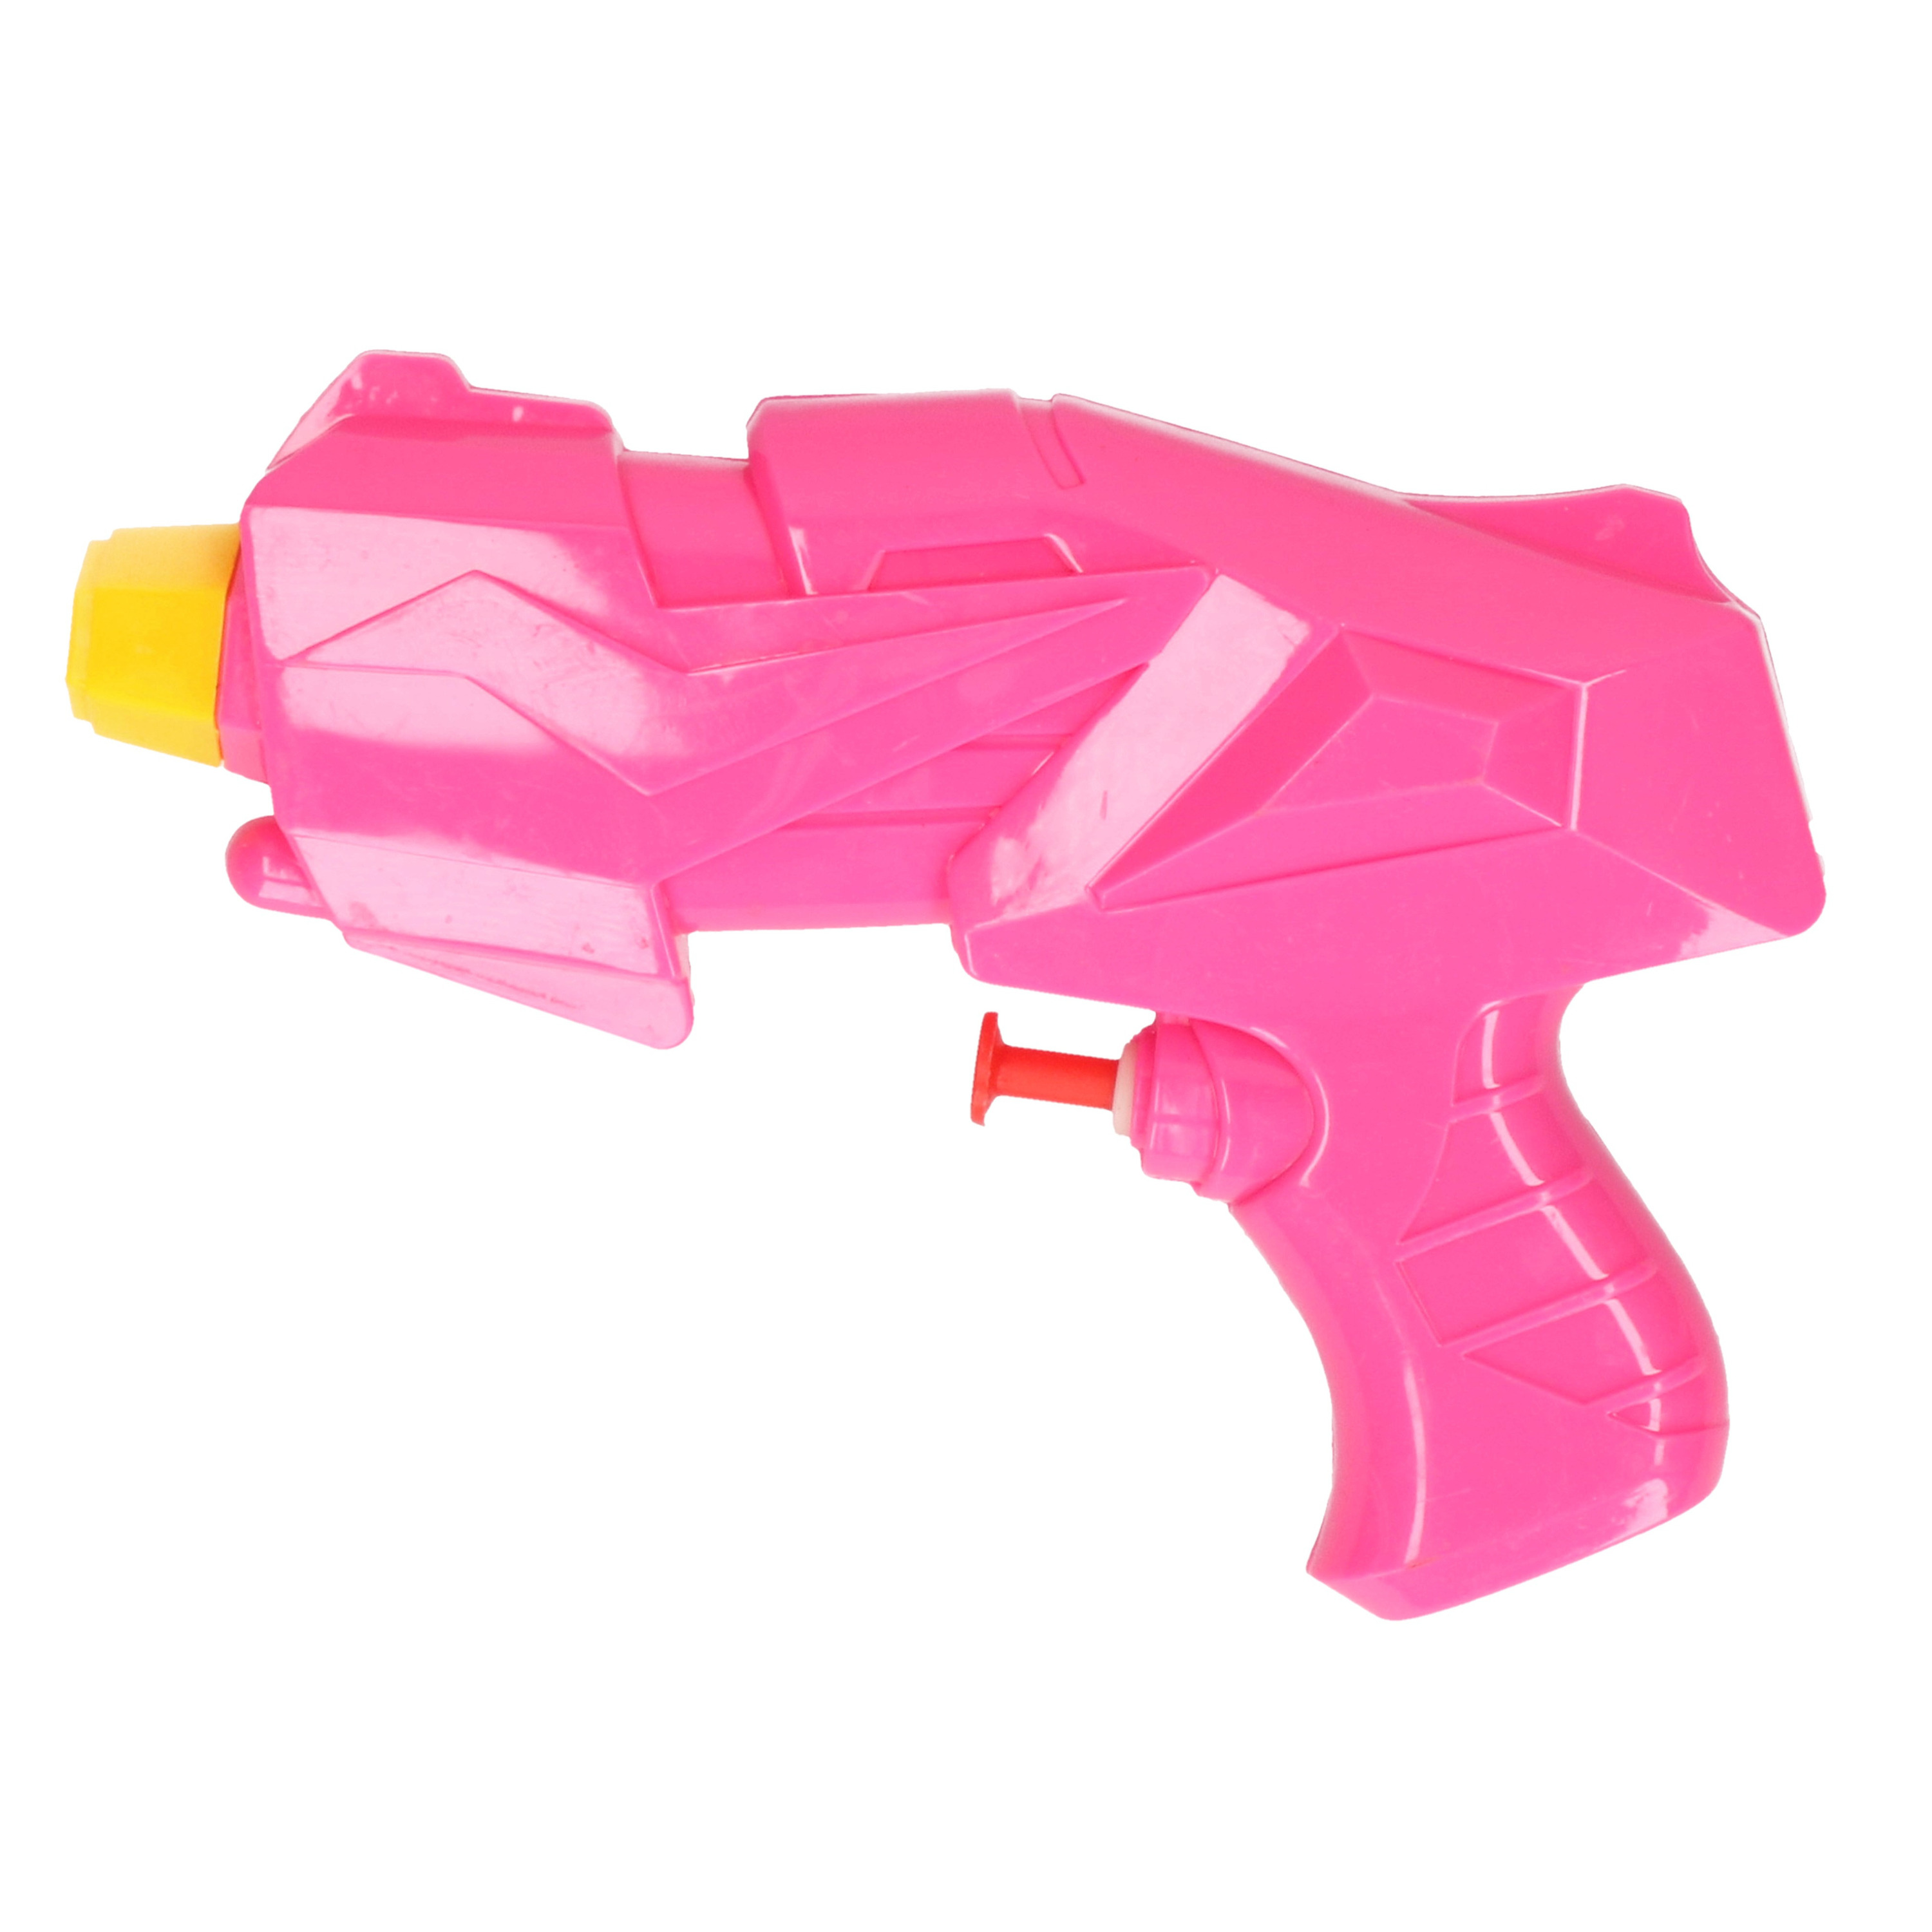 1x Klein kinderspeelgoed waterpistooltjes-waterpistolen 15 cm roze